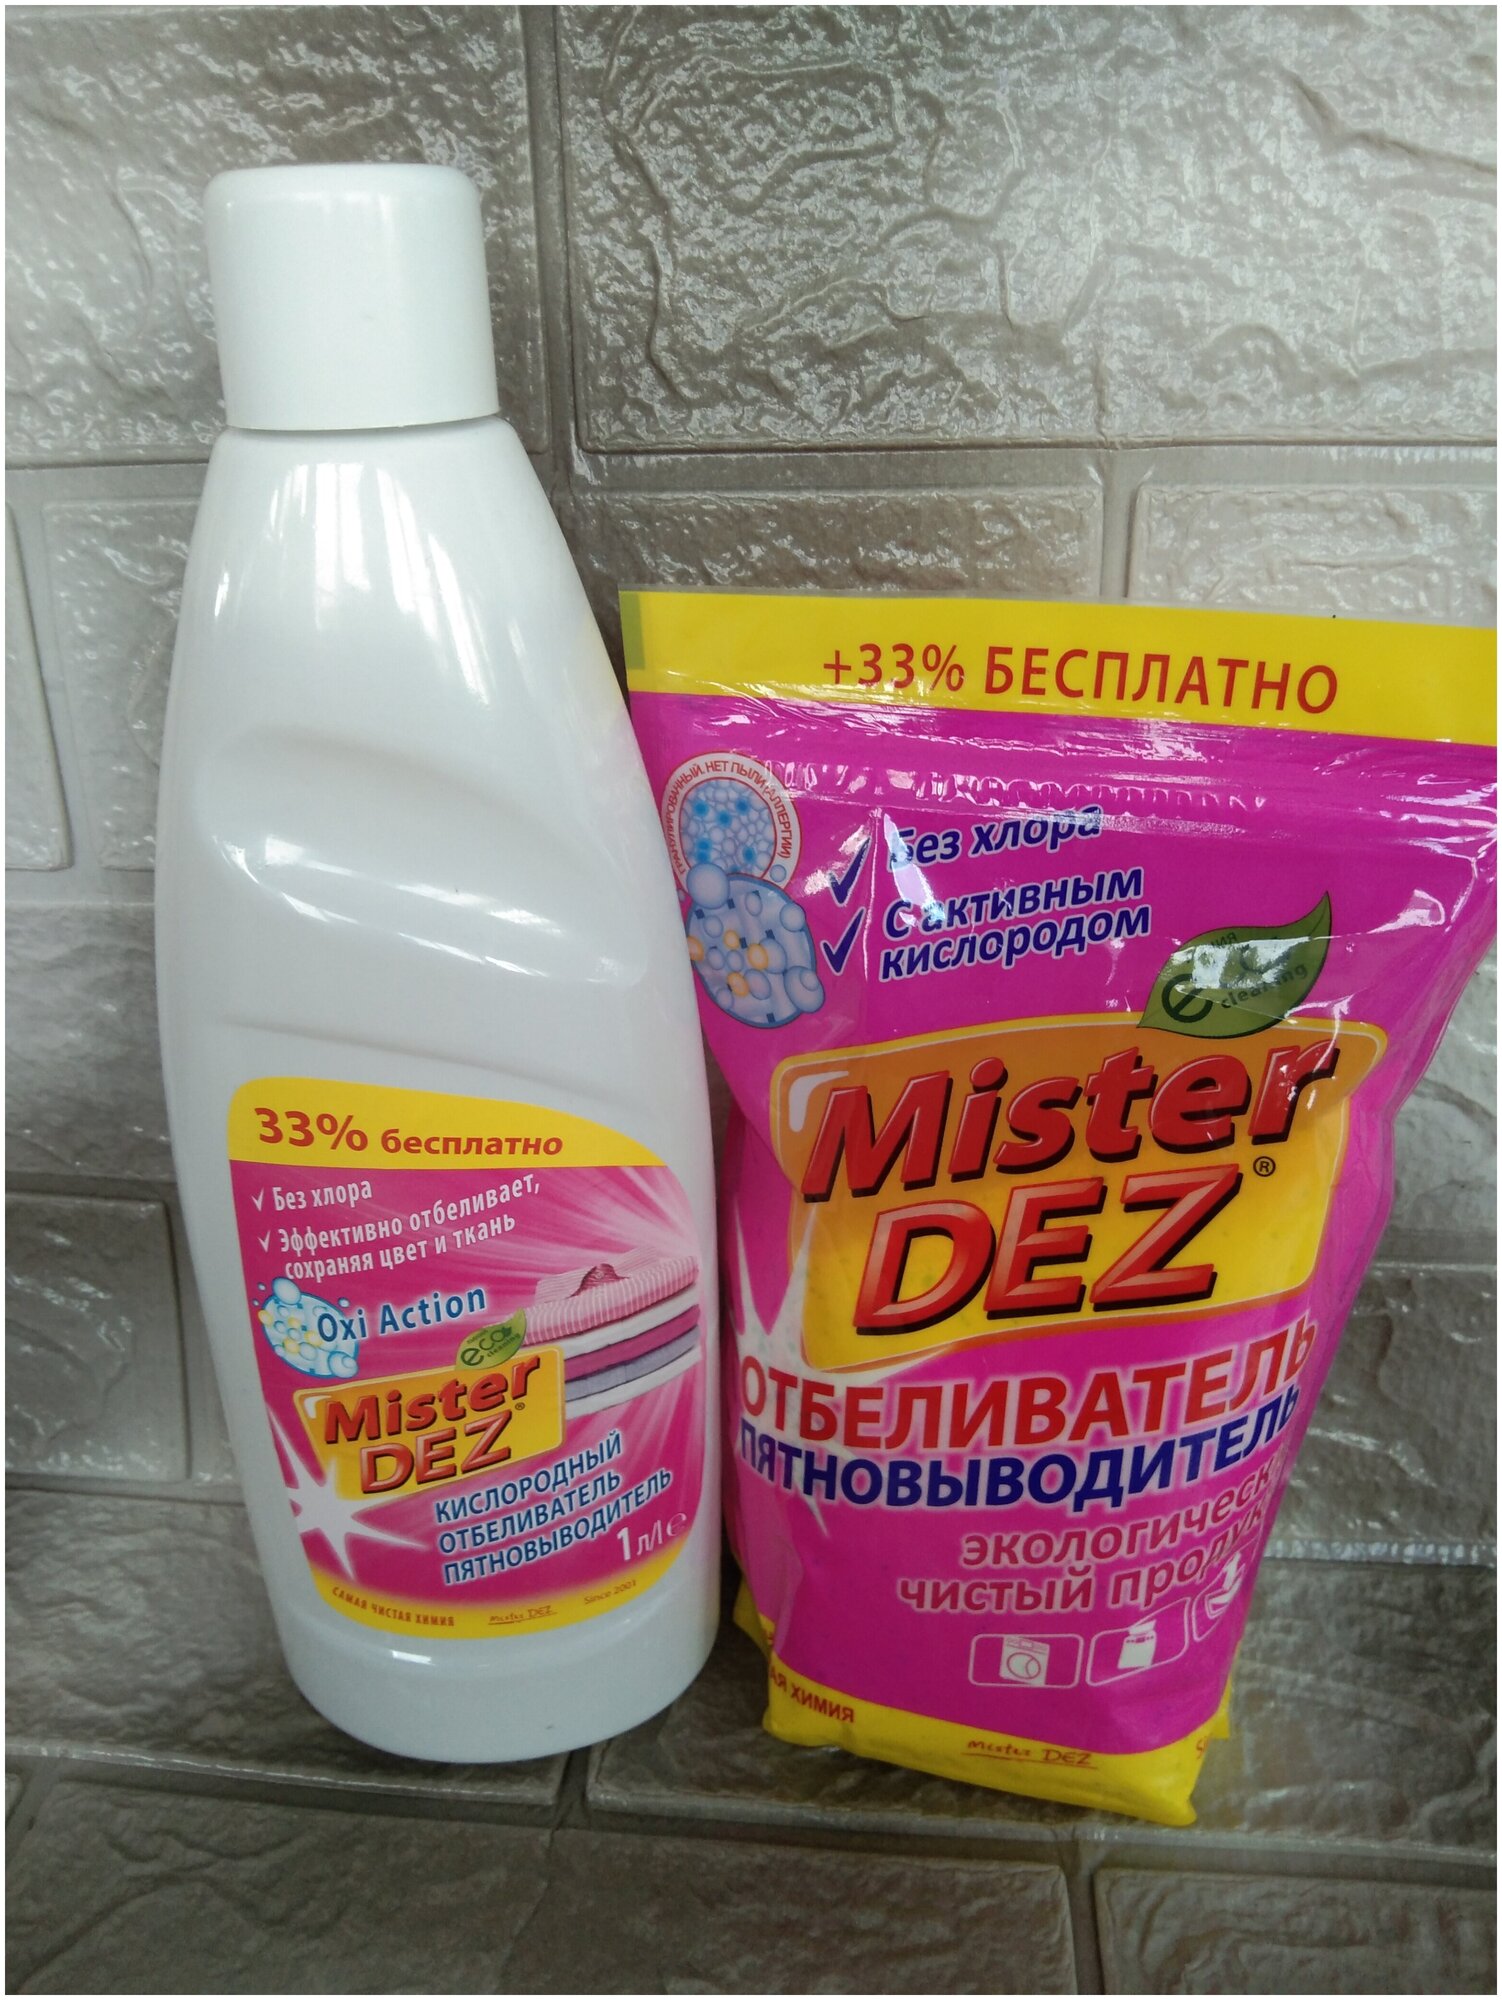 Набор кислородных отбеливателей- пятновыводителей "Mister DEZ" жидкий и порошок, 2 предмета в наборе